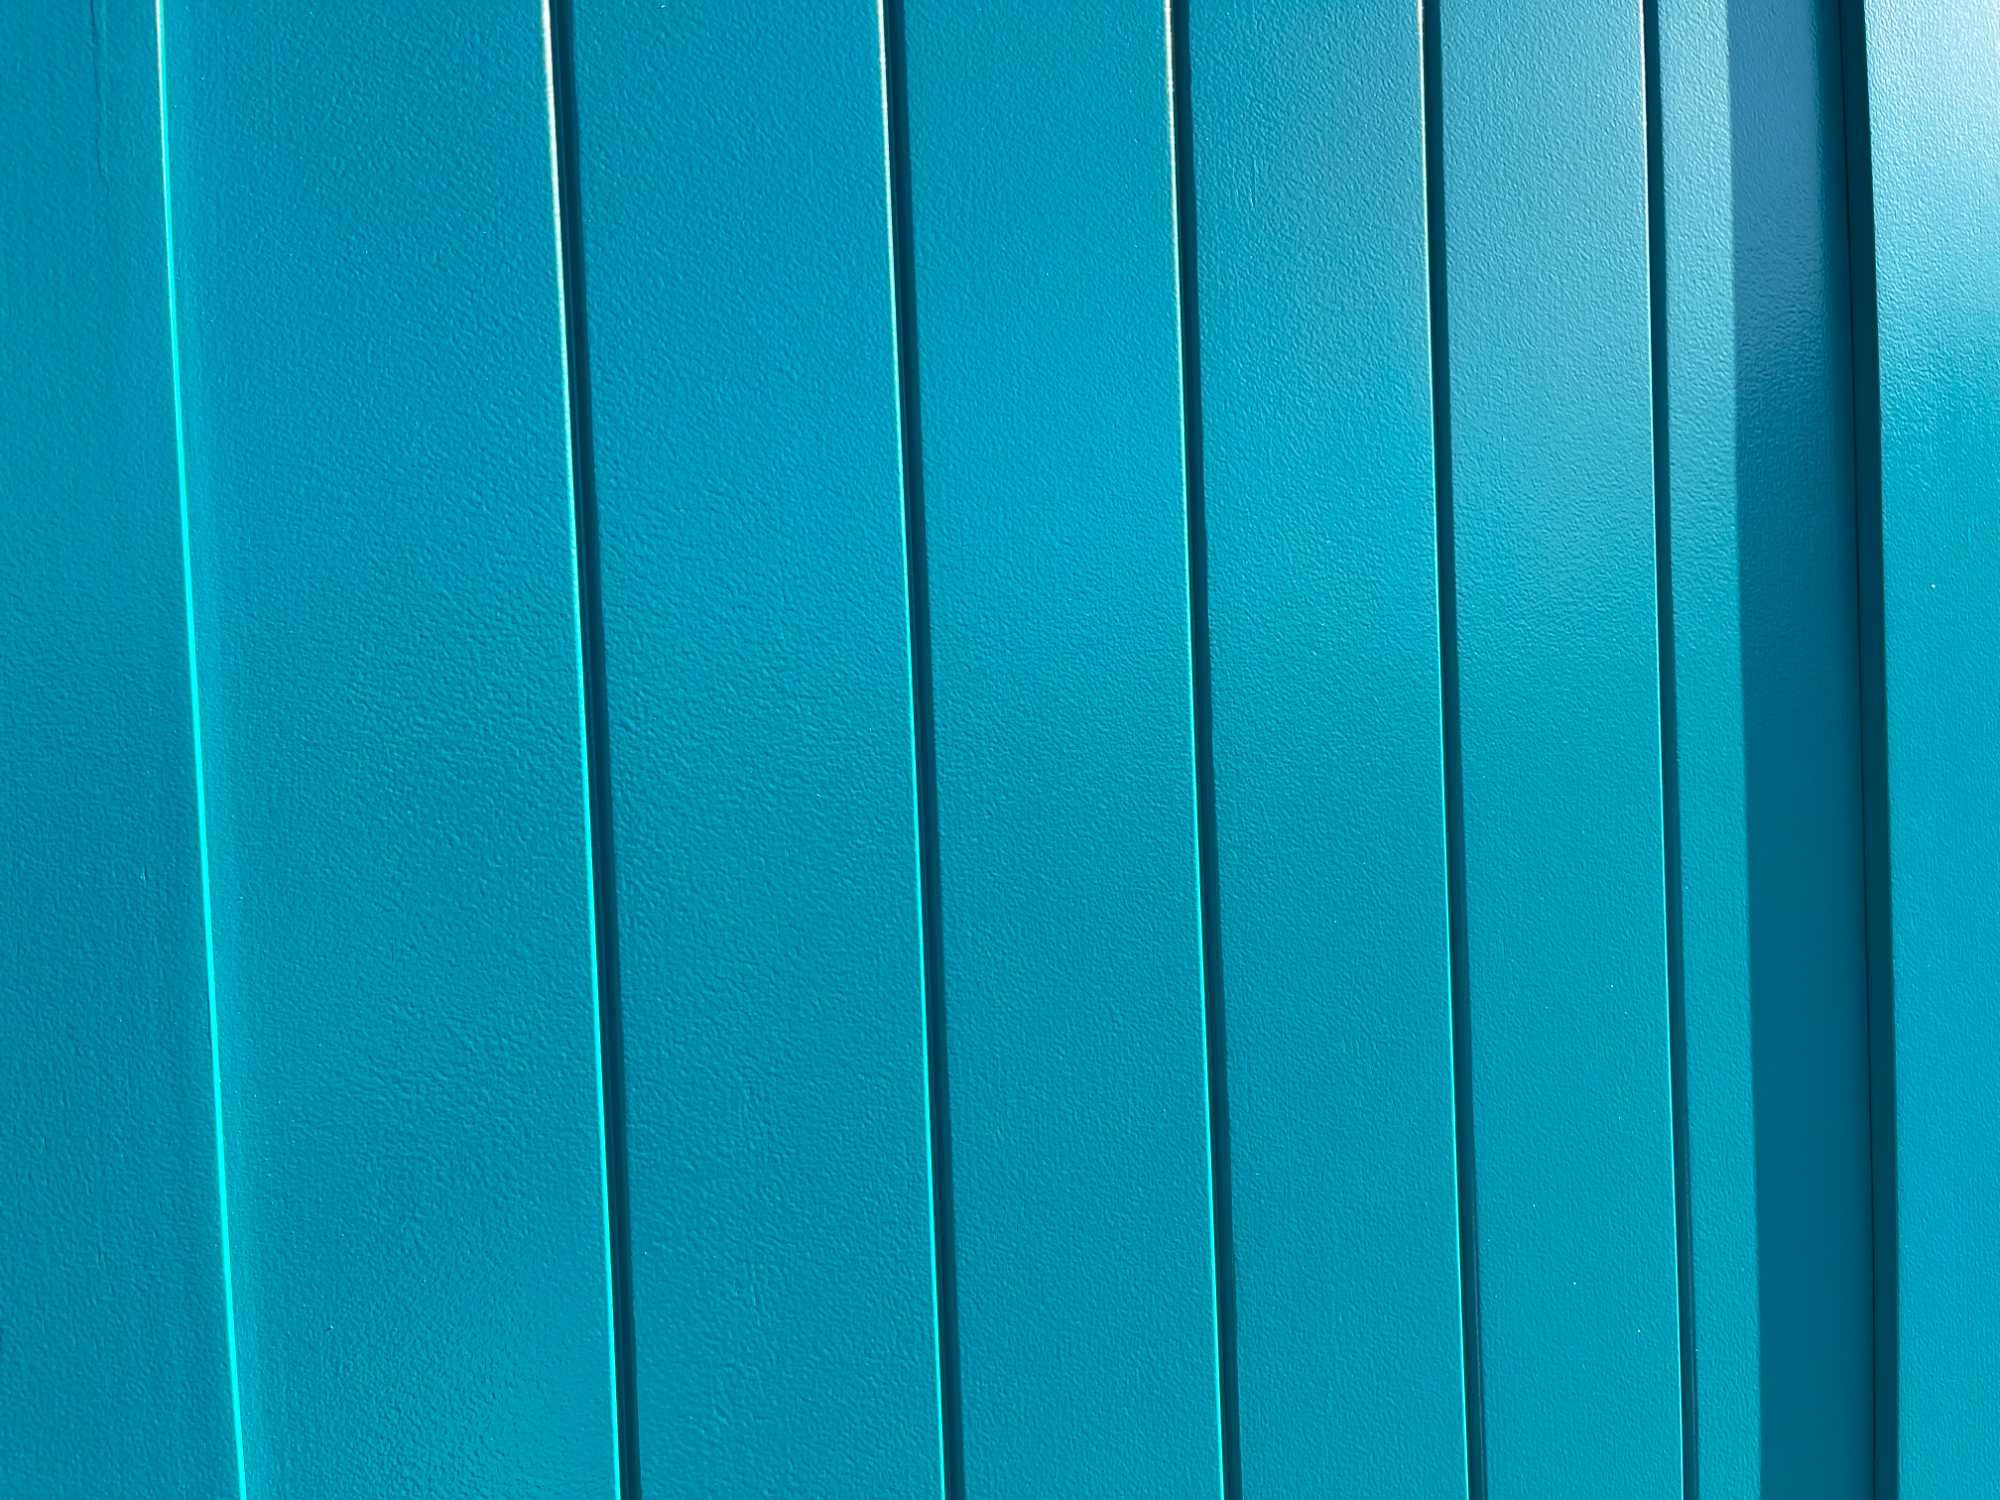 Drzwi drewniane sosnowe białe,niebieskie,turkusowe, CAŁA POLSKA